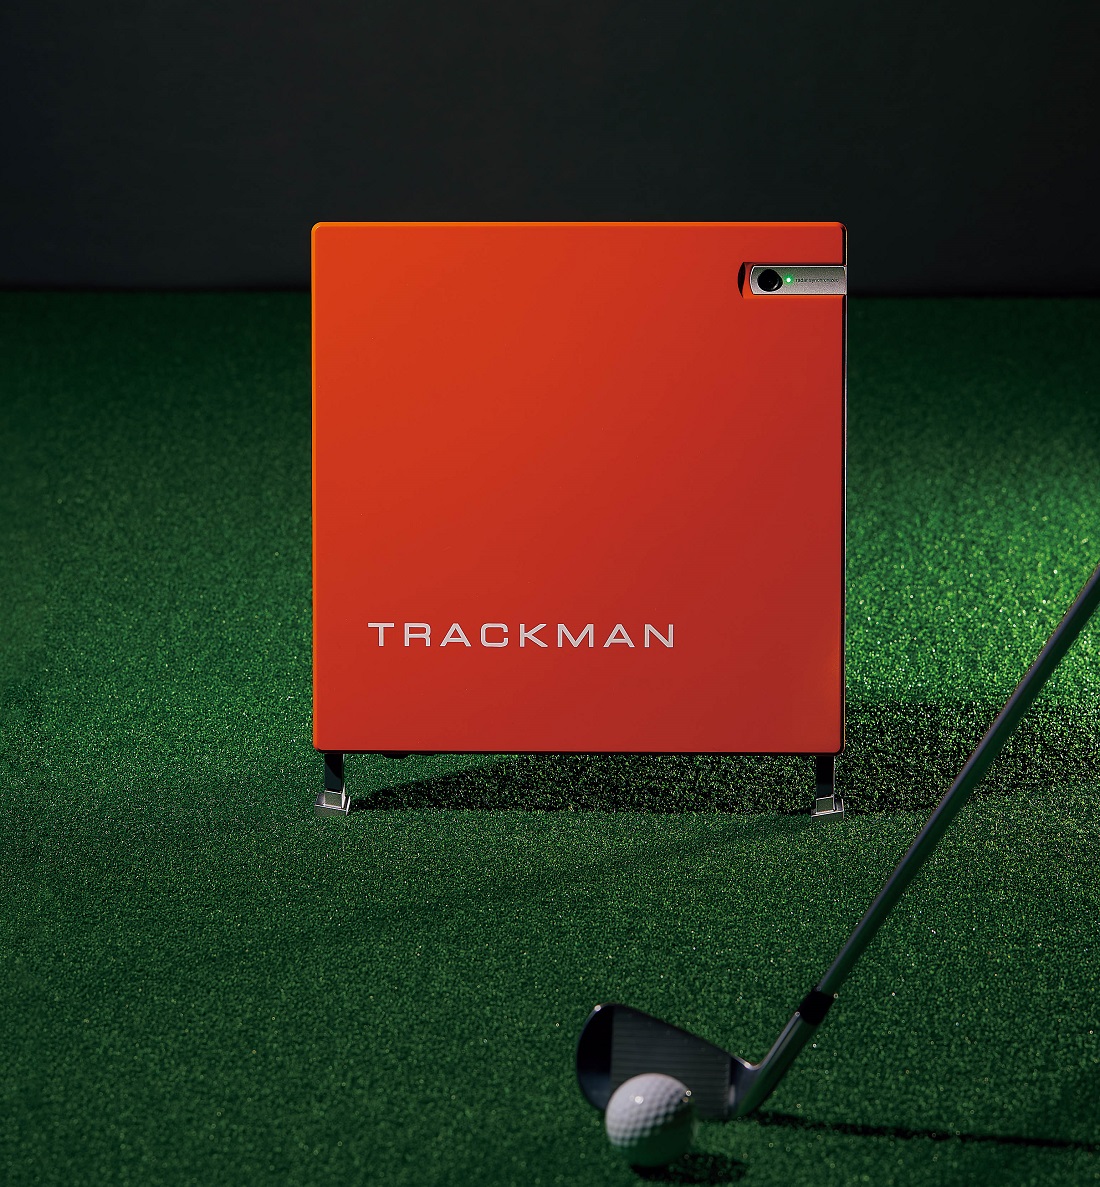 弾道計測機｢トラックマン｣で叶える、最強アマチュアゴルファーへの道